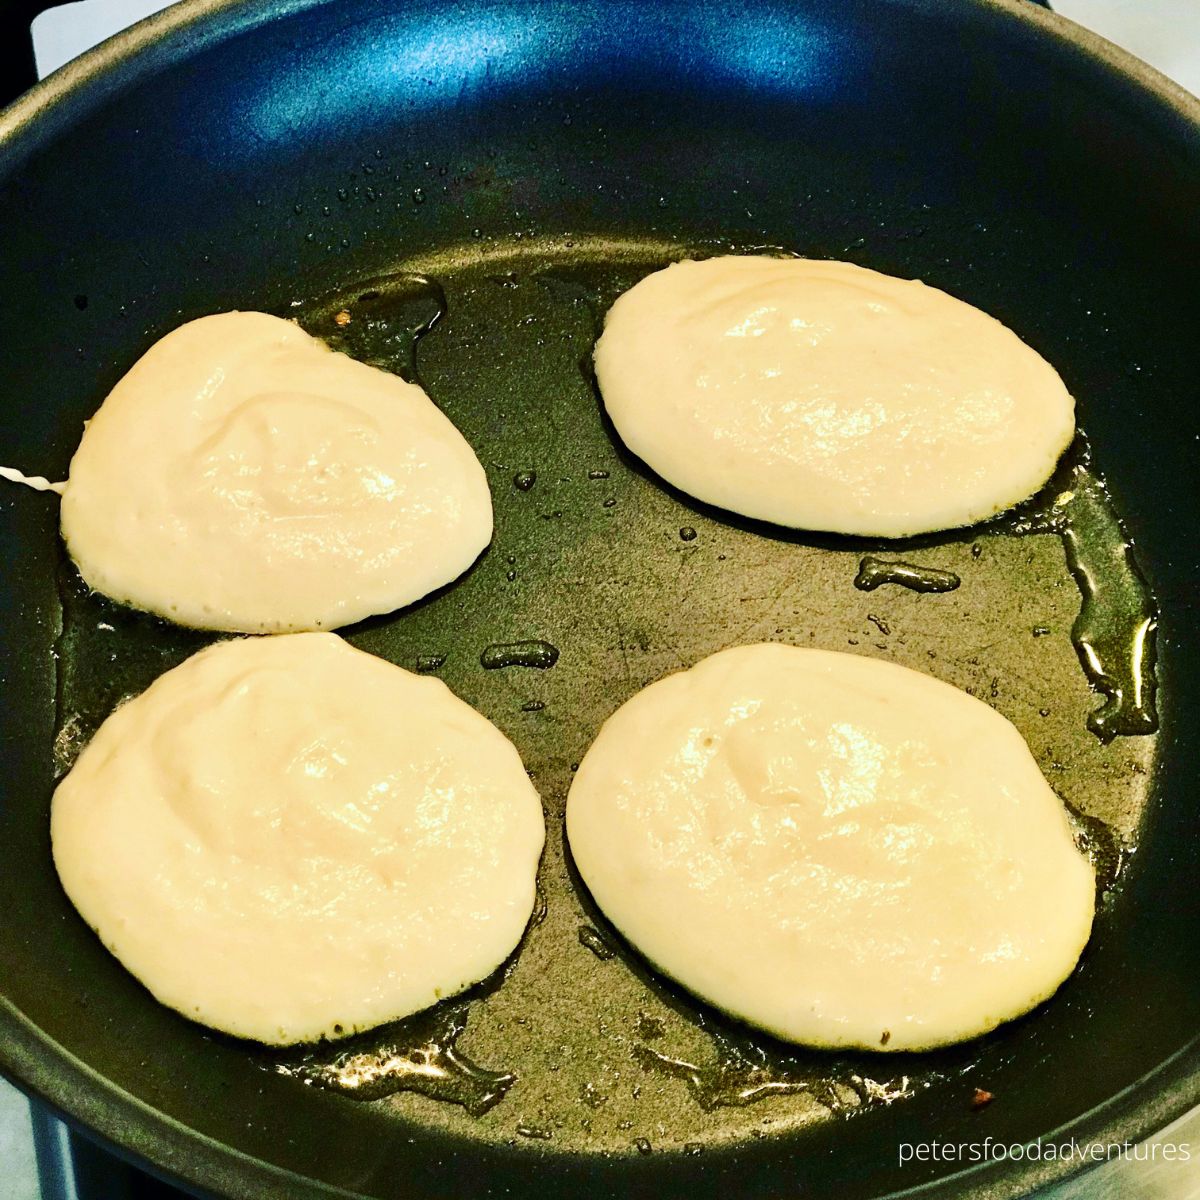 frying pancakes